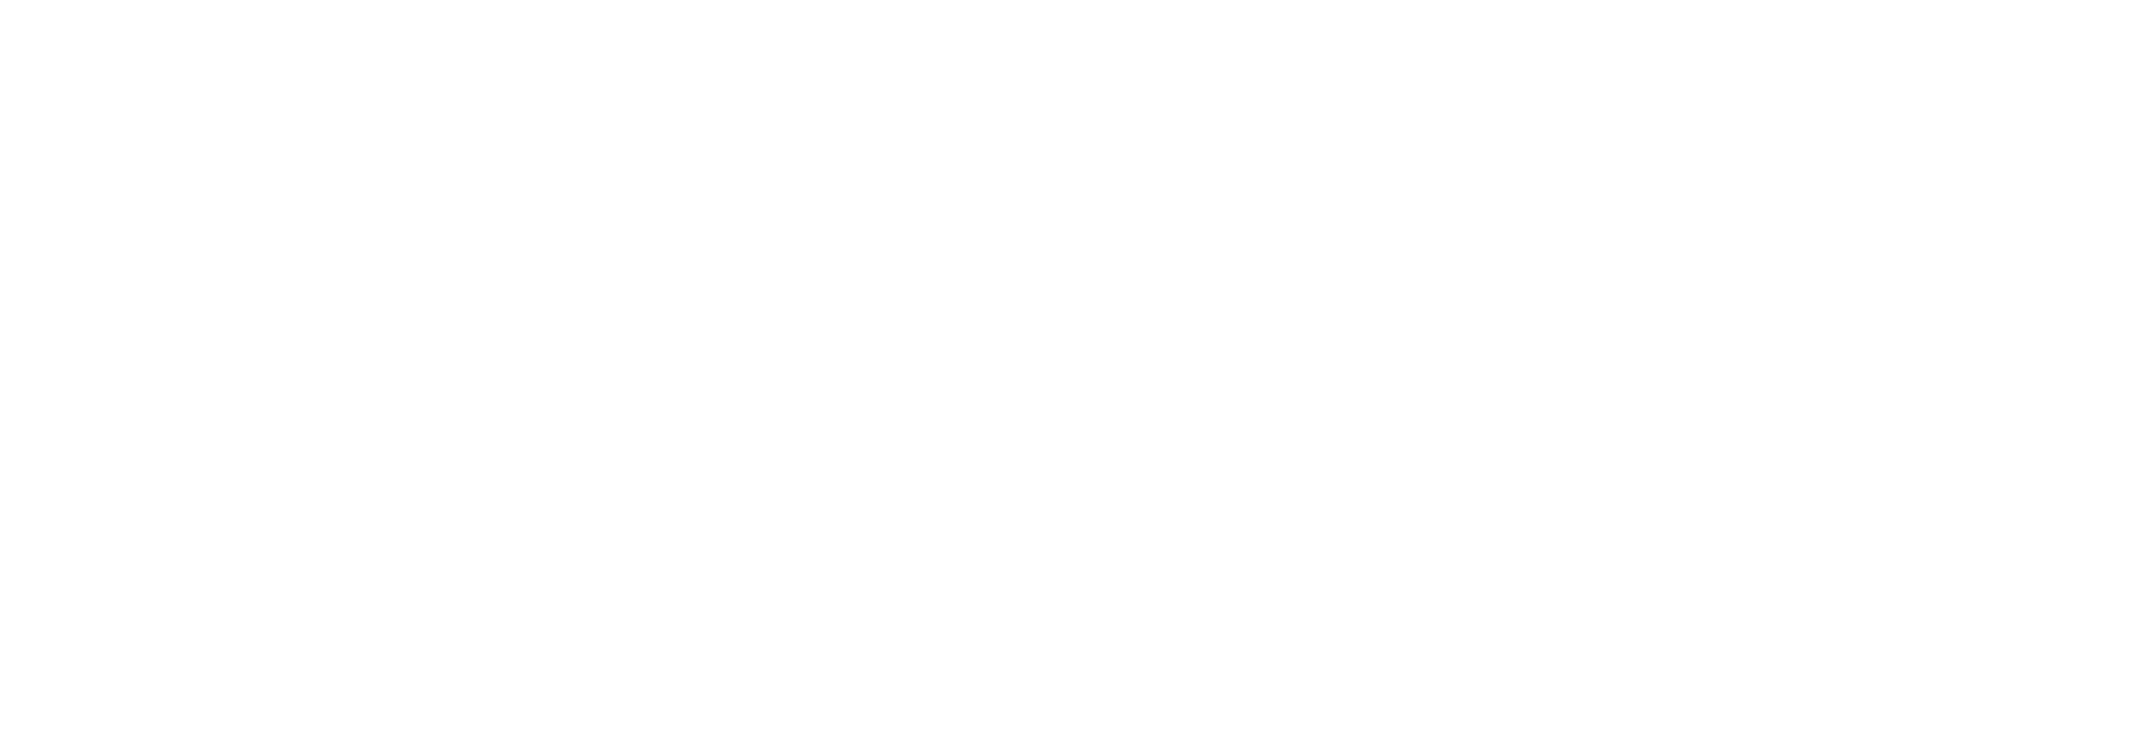 Logo-van-der-valk-wit